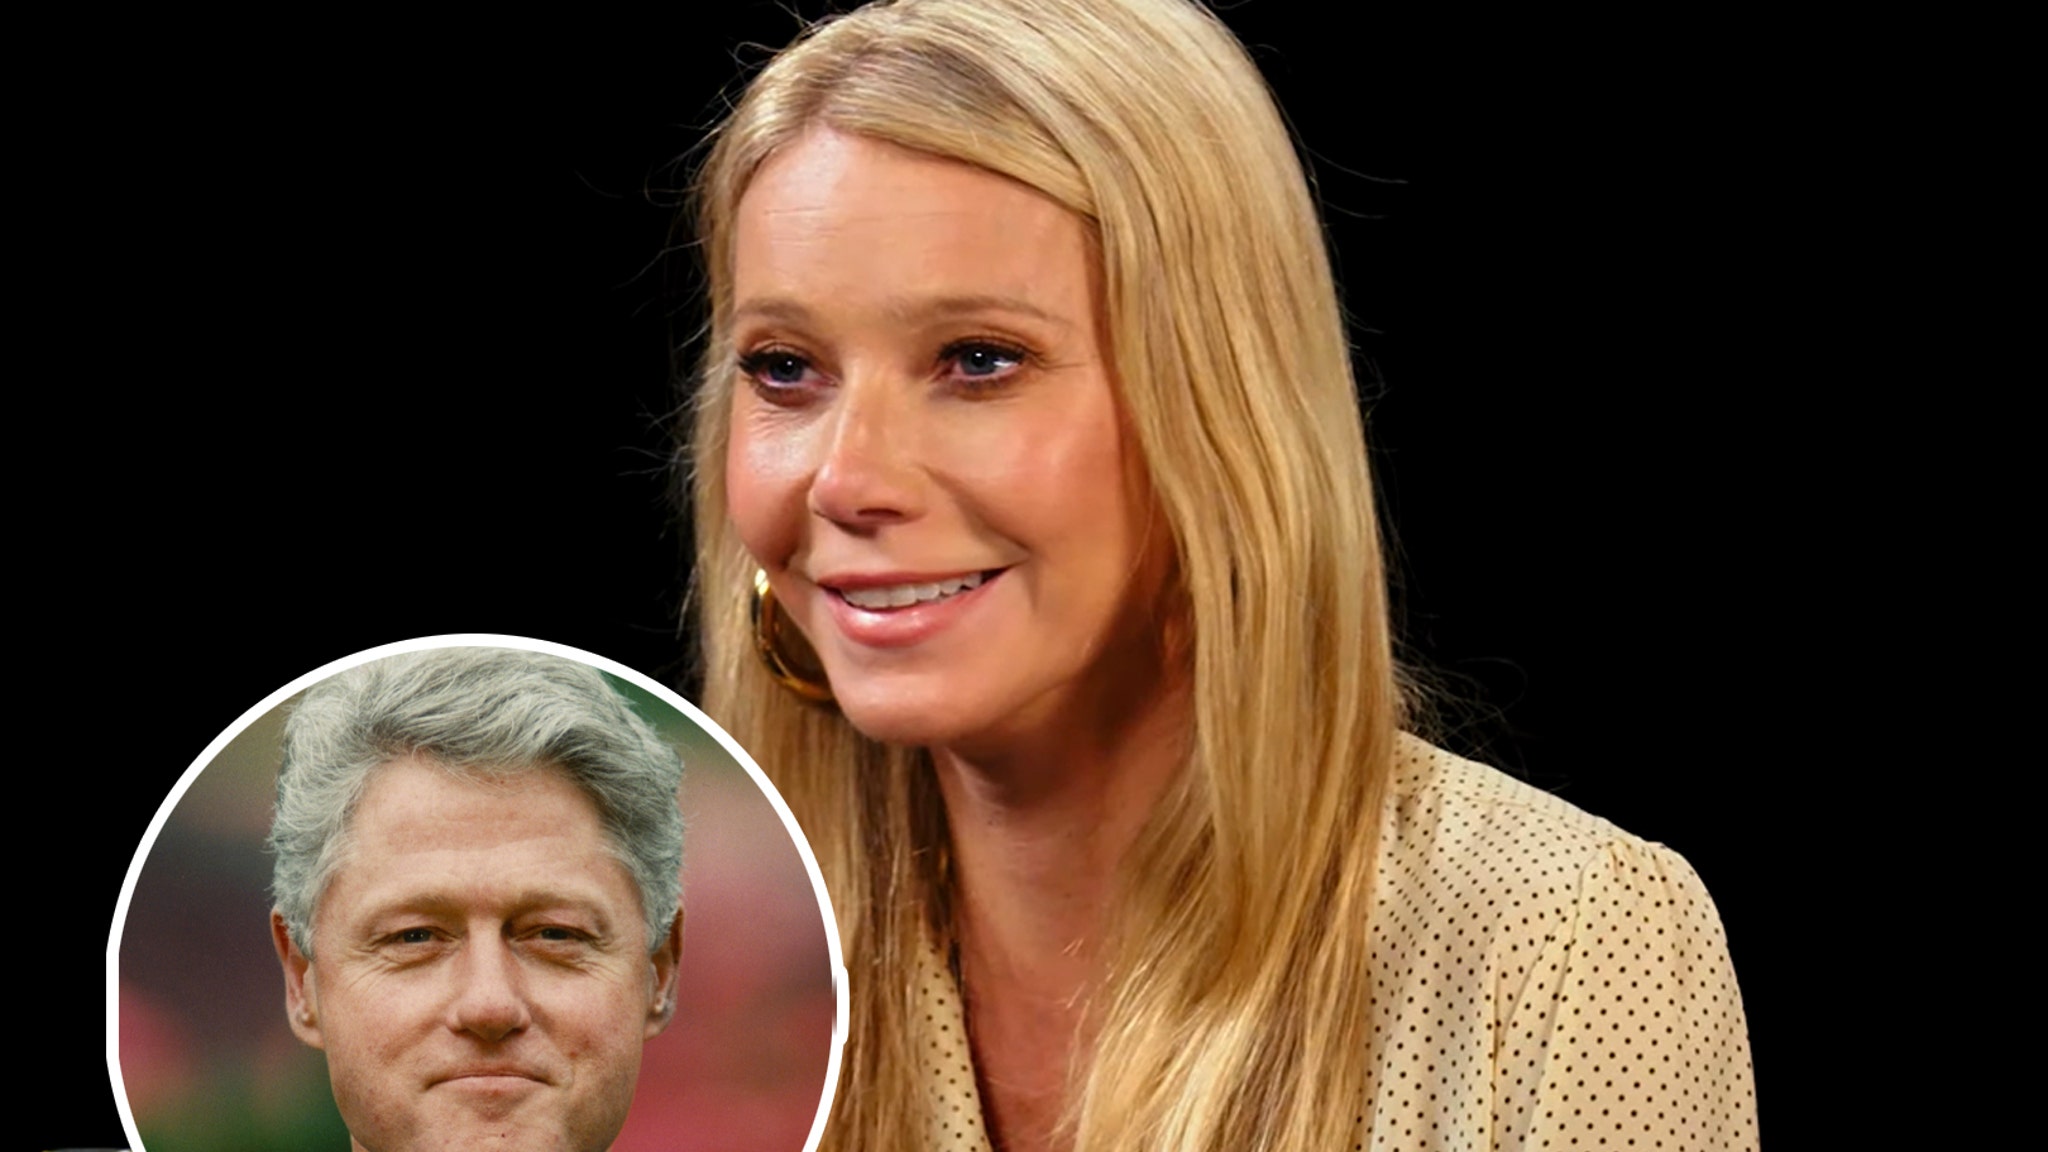 Why Gwyneth Paltrow Is Saying 'F--k You' to Bill Clinton